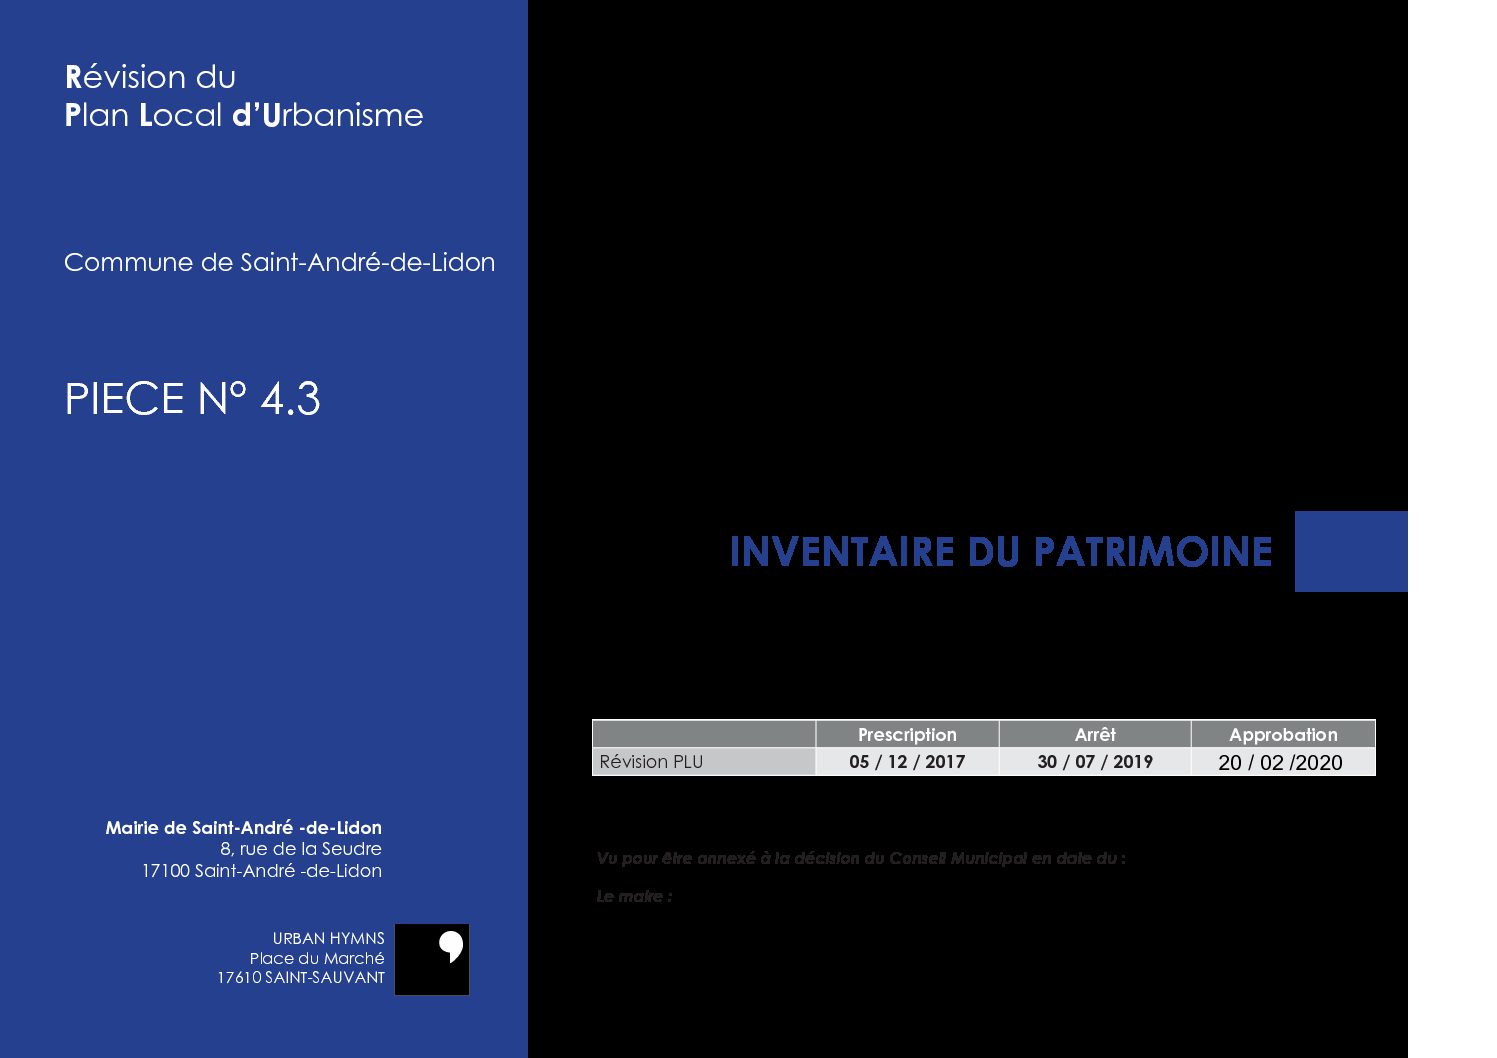 PIECE N° 4.3 – INVENTAIRE DU PATRIMOINE